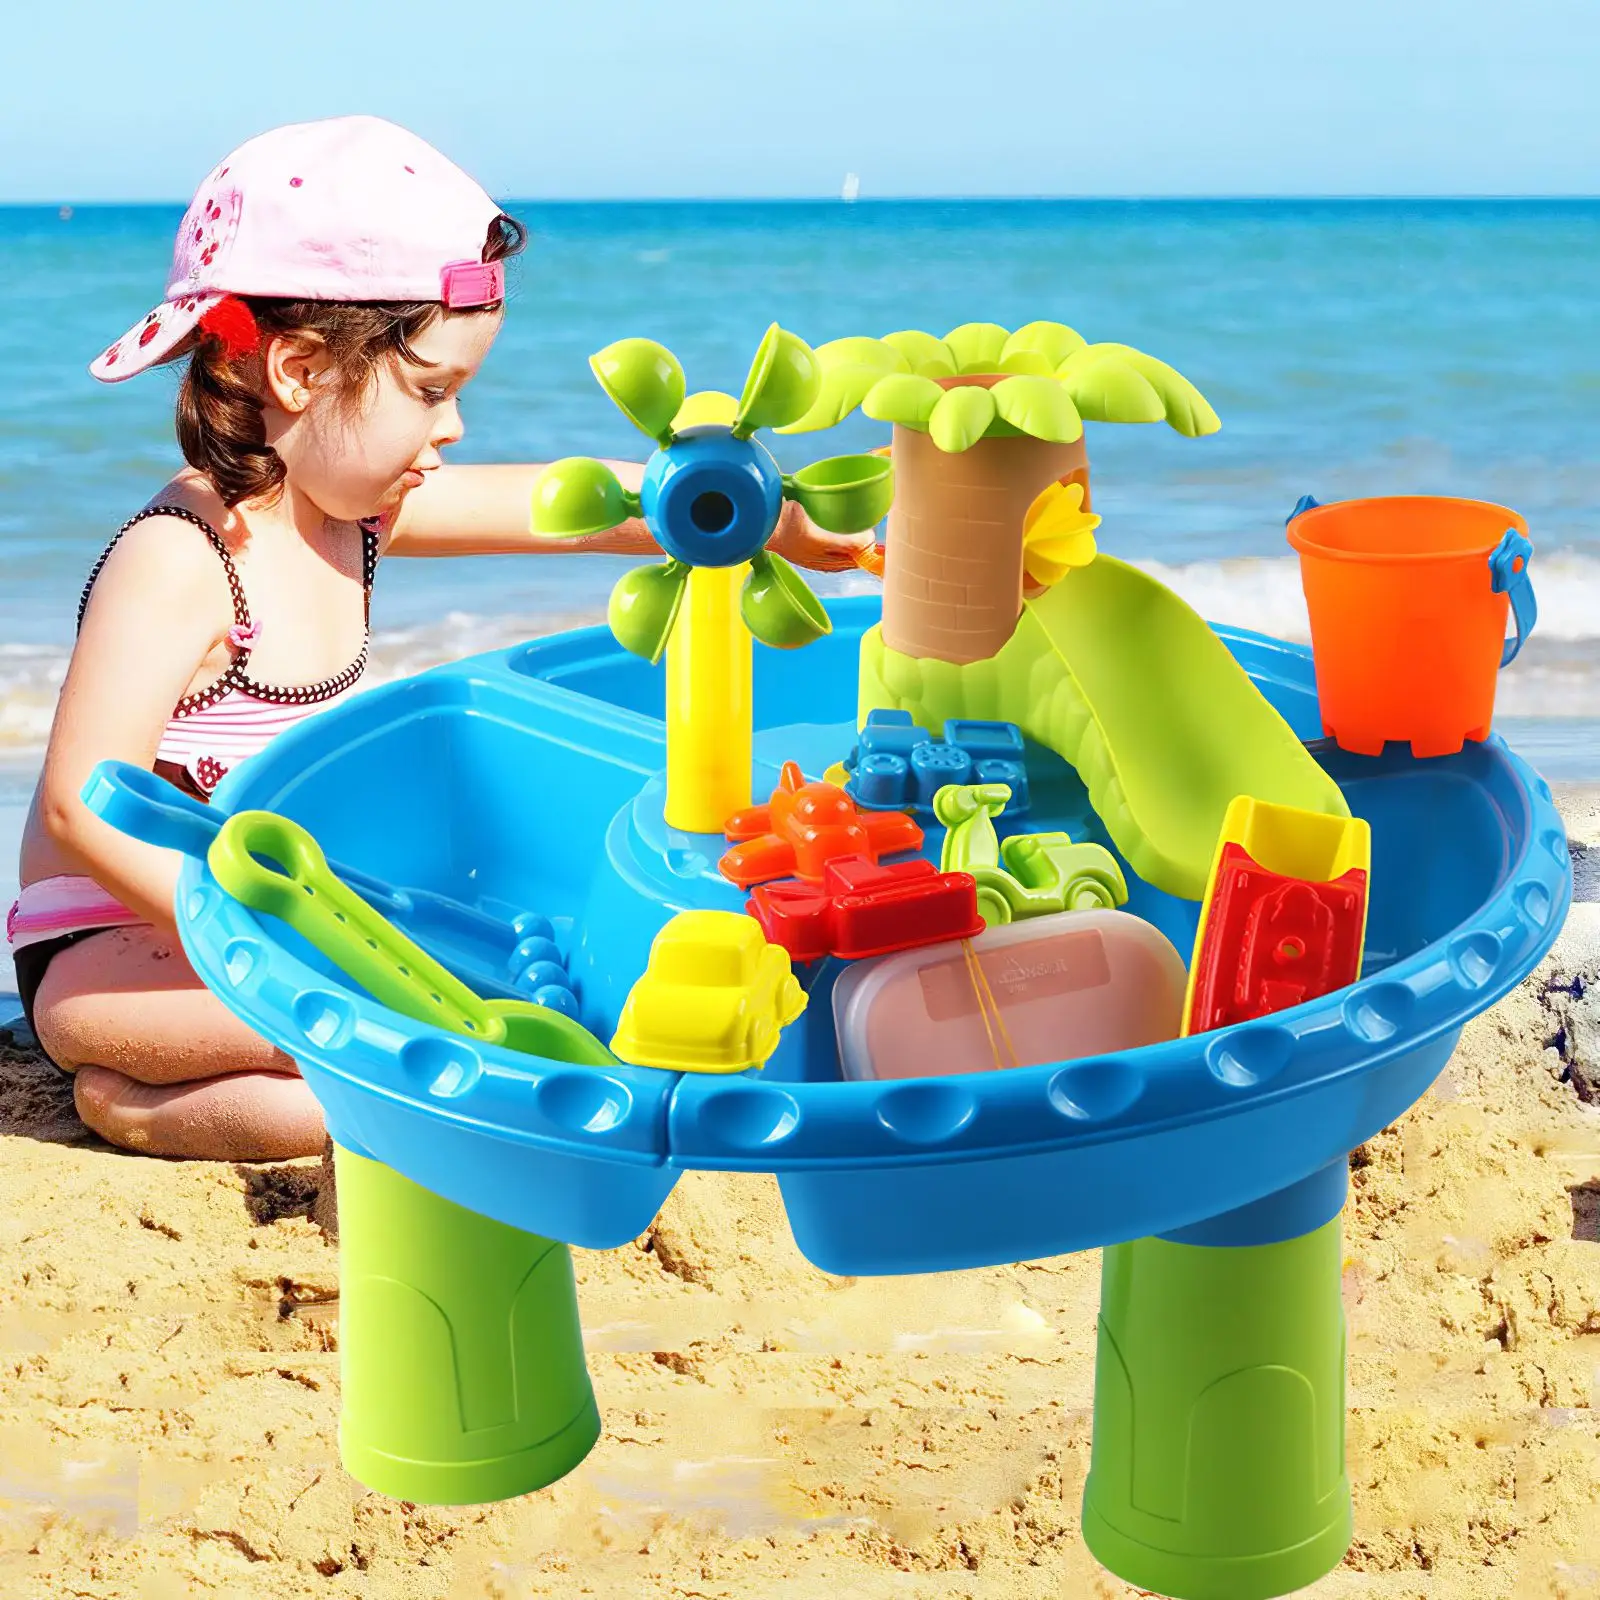 

Песочные игрушки для улицы, набор форм для игры в помещении и на пляже, песочница, стол для игр с водой, пляжные игрушки для детей, подарок для...